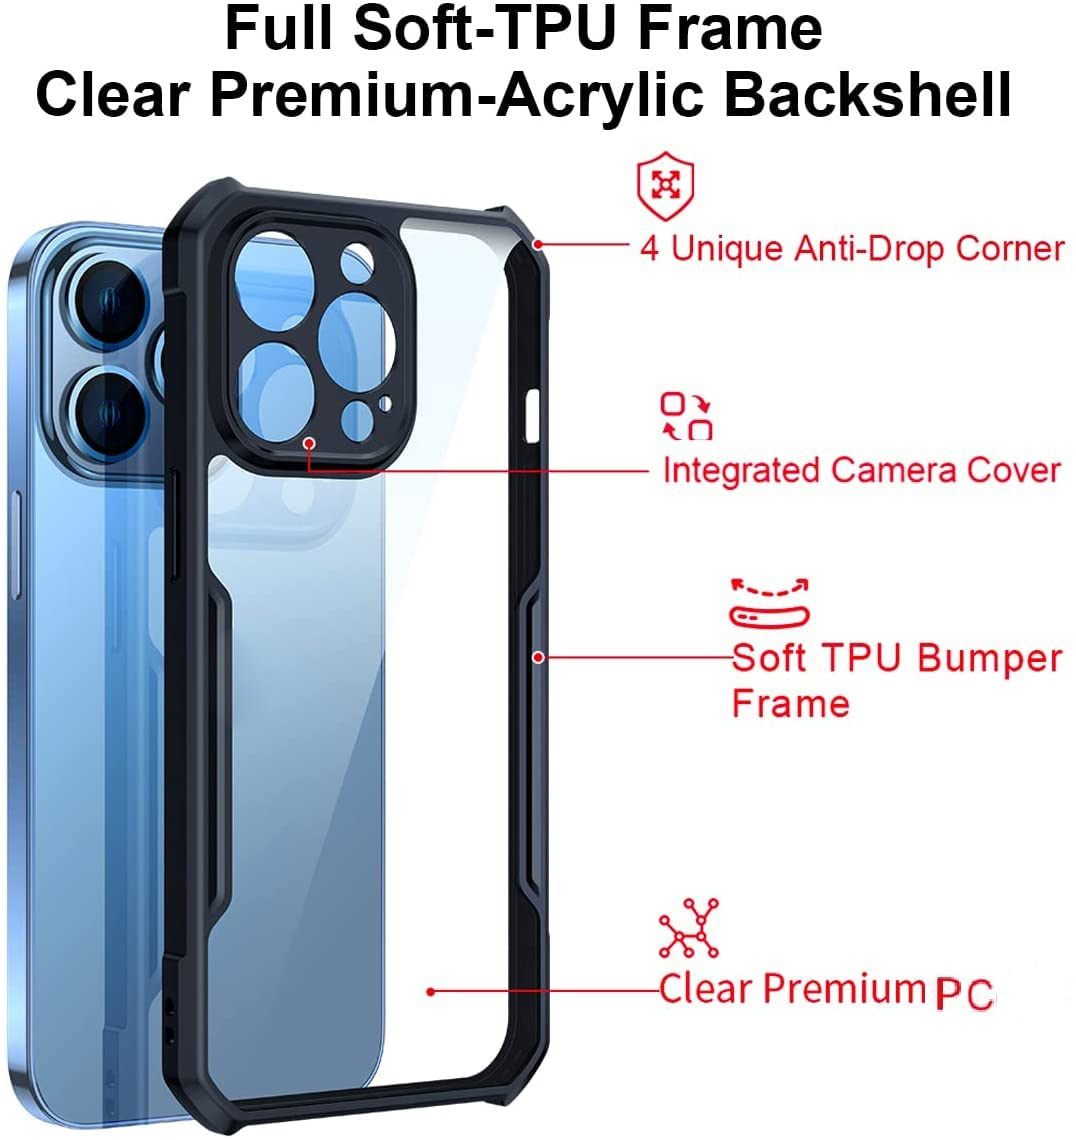 Ốp lưng chống sốc cho iPhone 14 / 14 Plus / 14 Pro / 14 Pro Max hiệu Xundd Fitted Armor Case trang bị túi khí bảo vệ góc, gờ bảo vệ camera - Hàng nhập khẩu